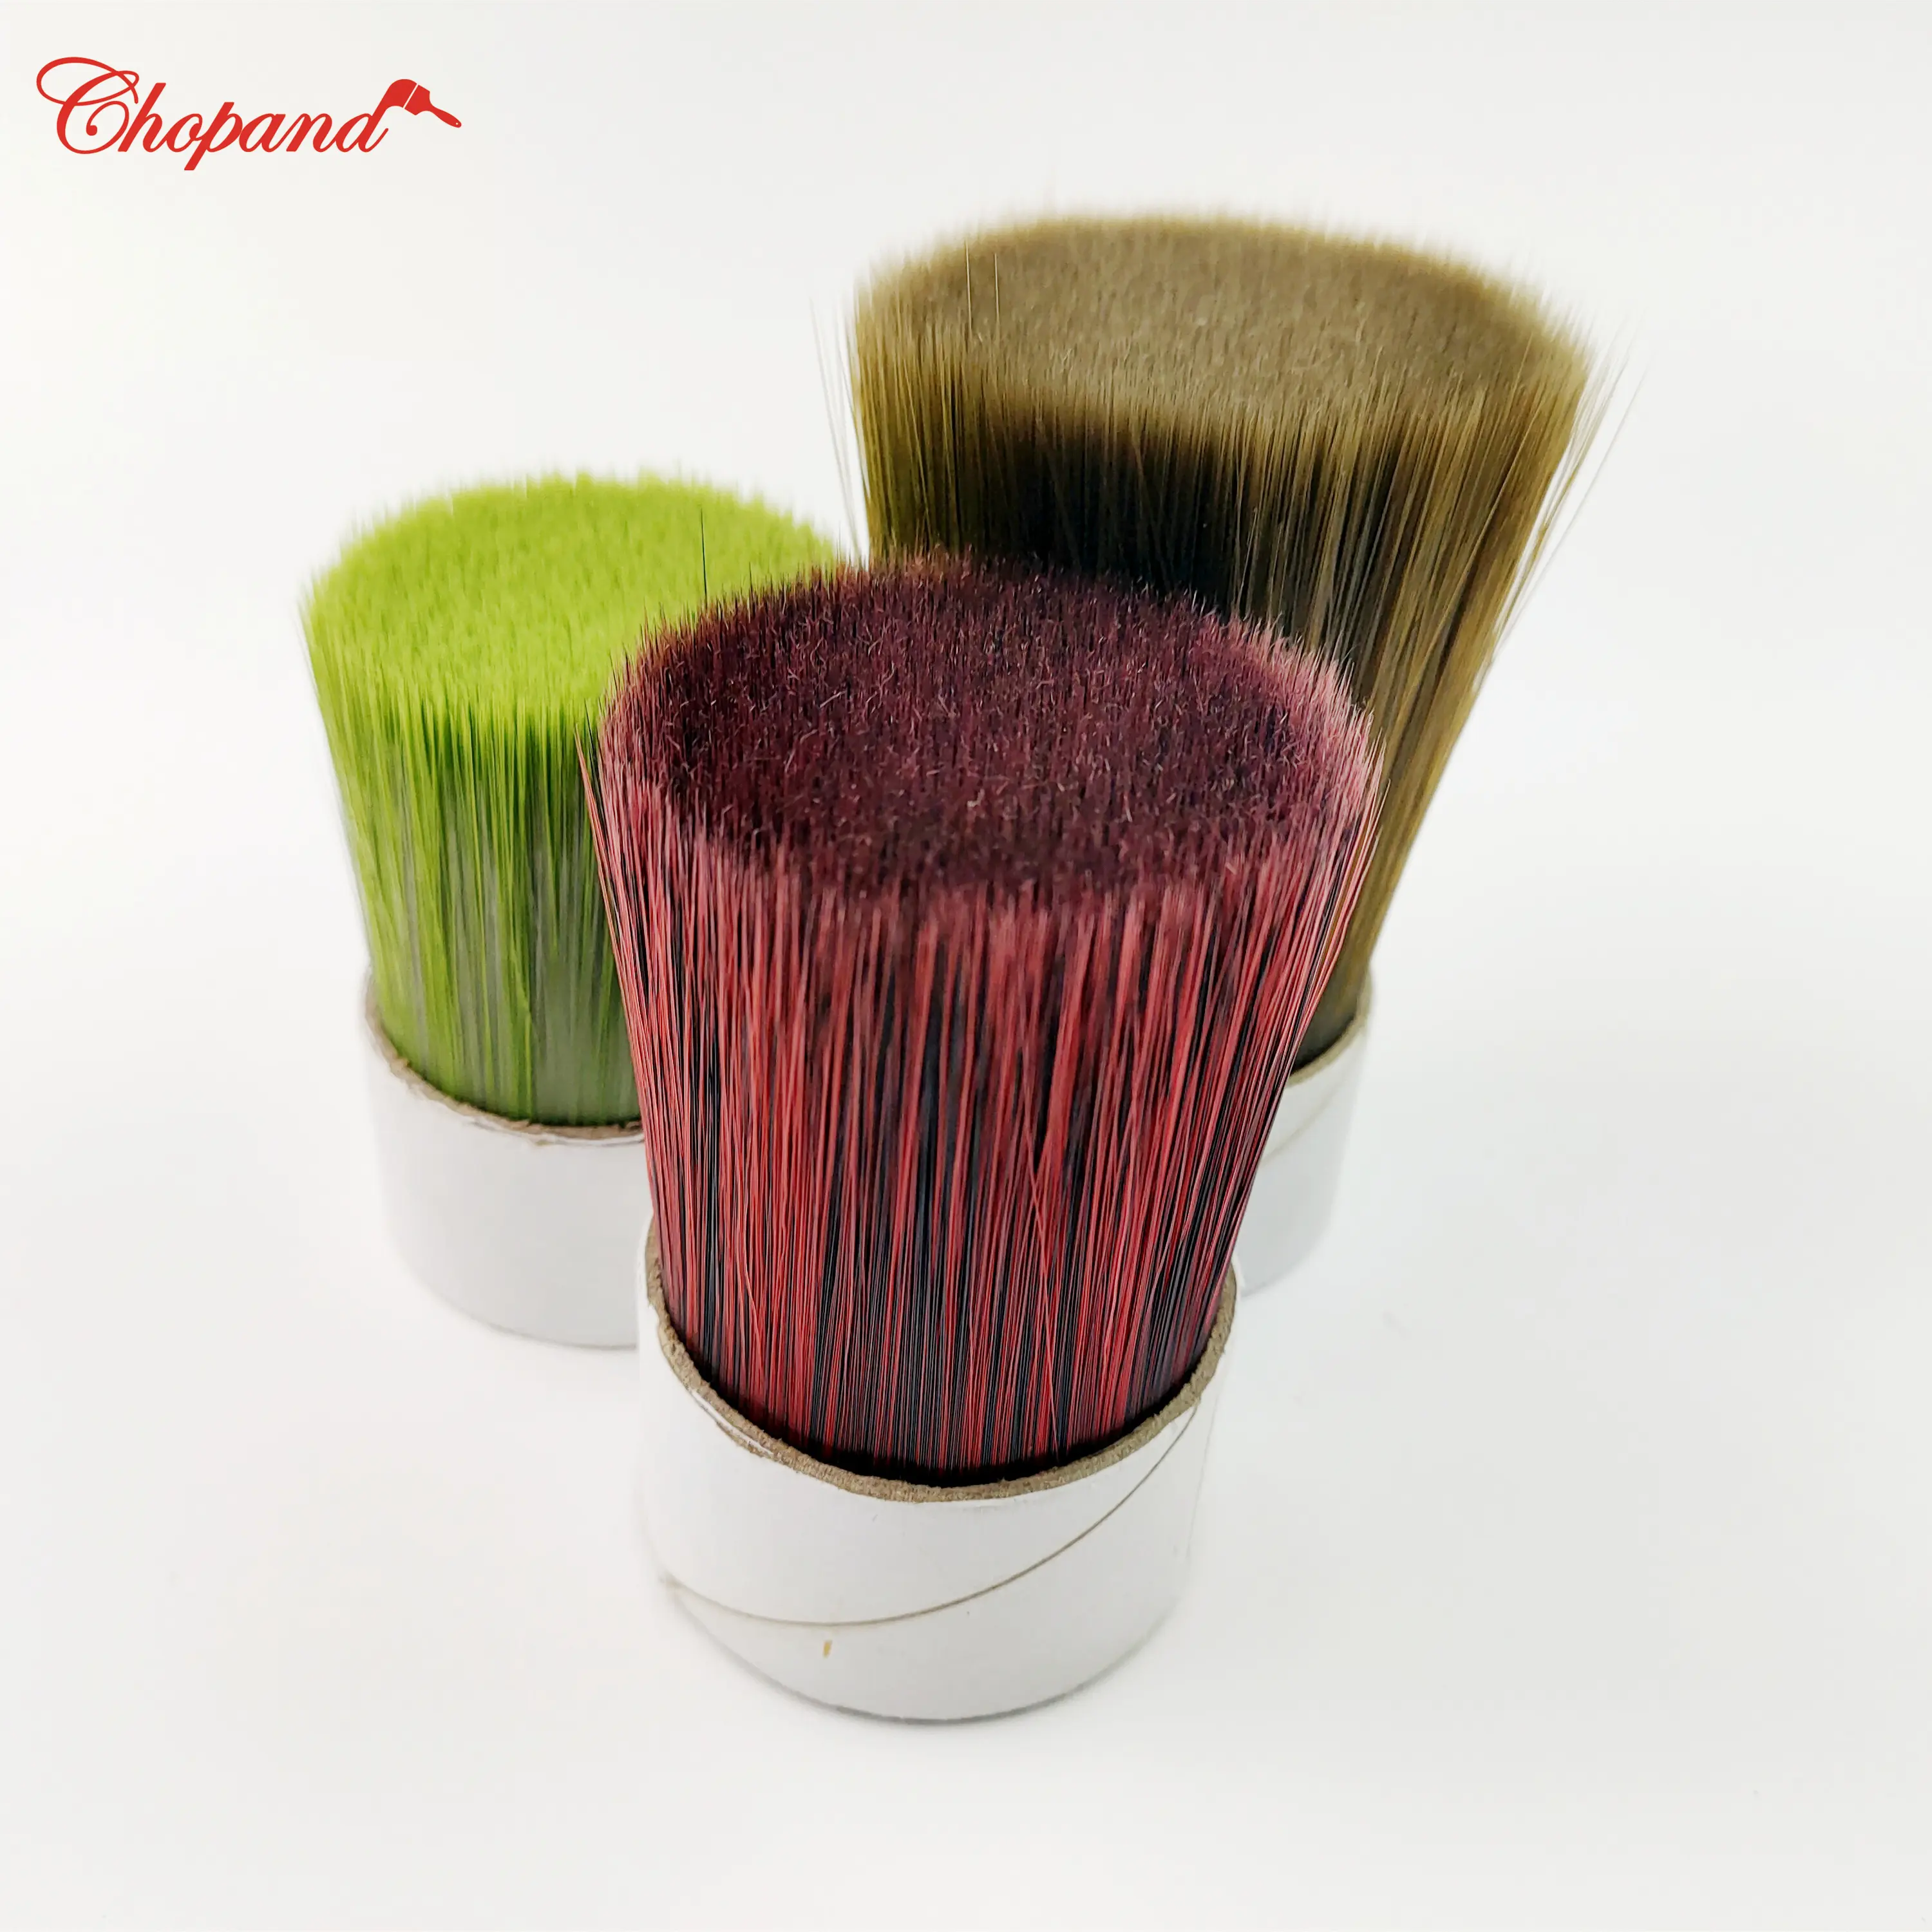 Chopand neue hochwertige Polyester Pinsel Filamente Borsten für Pinsel